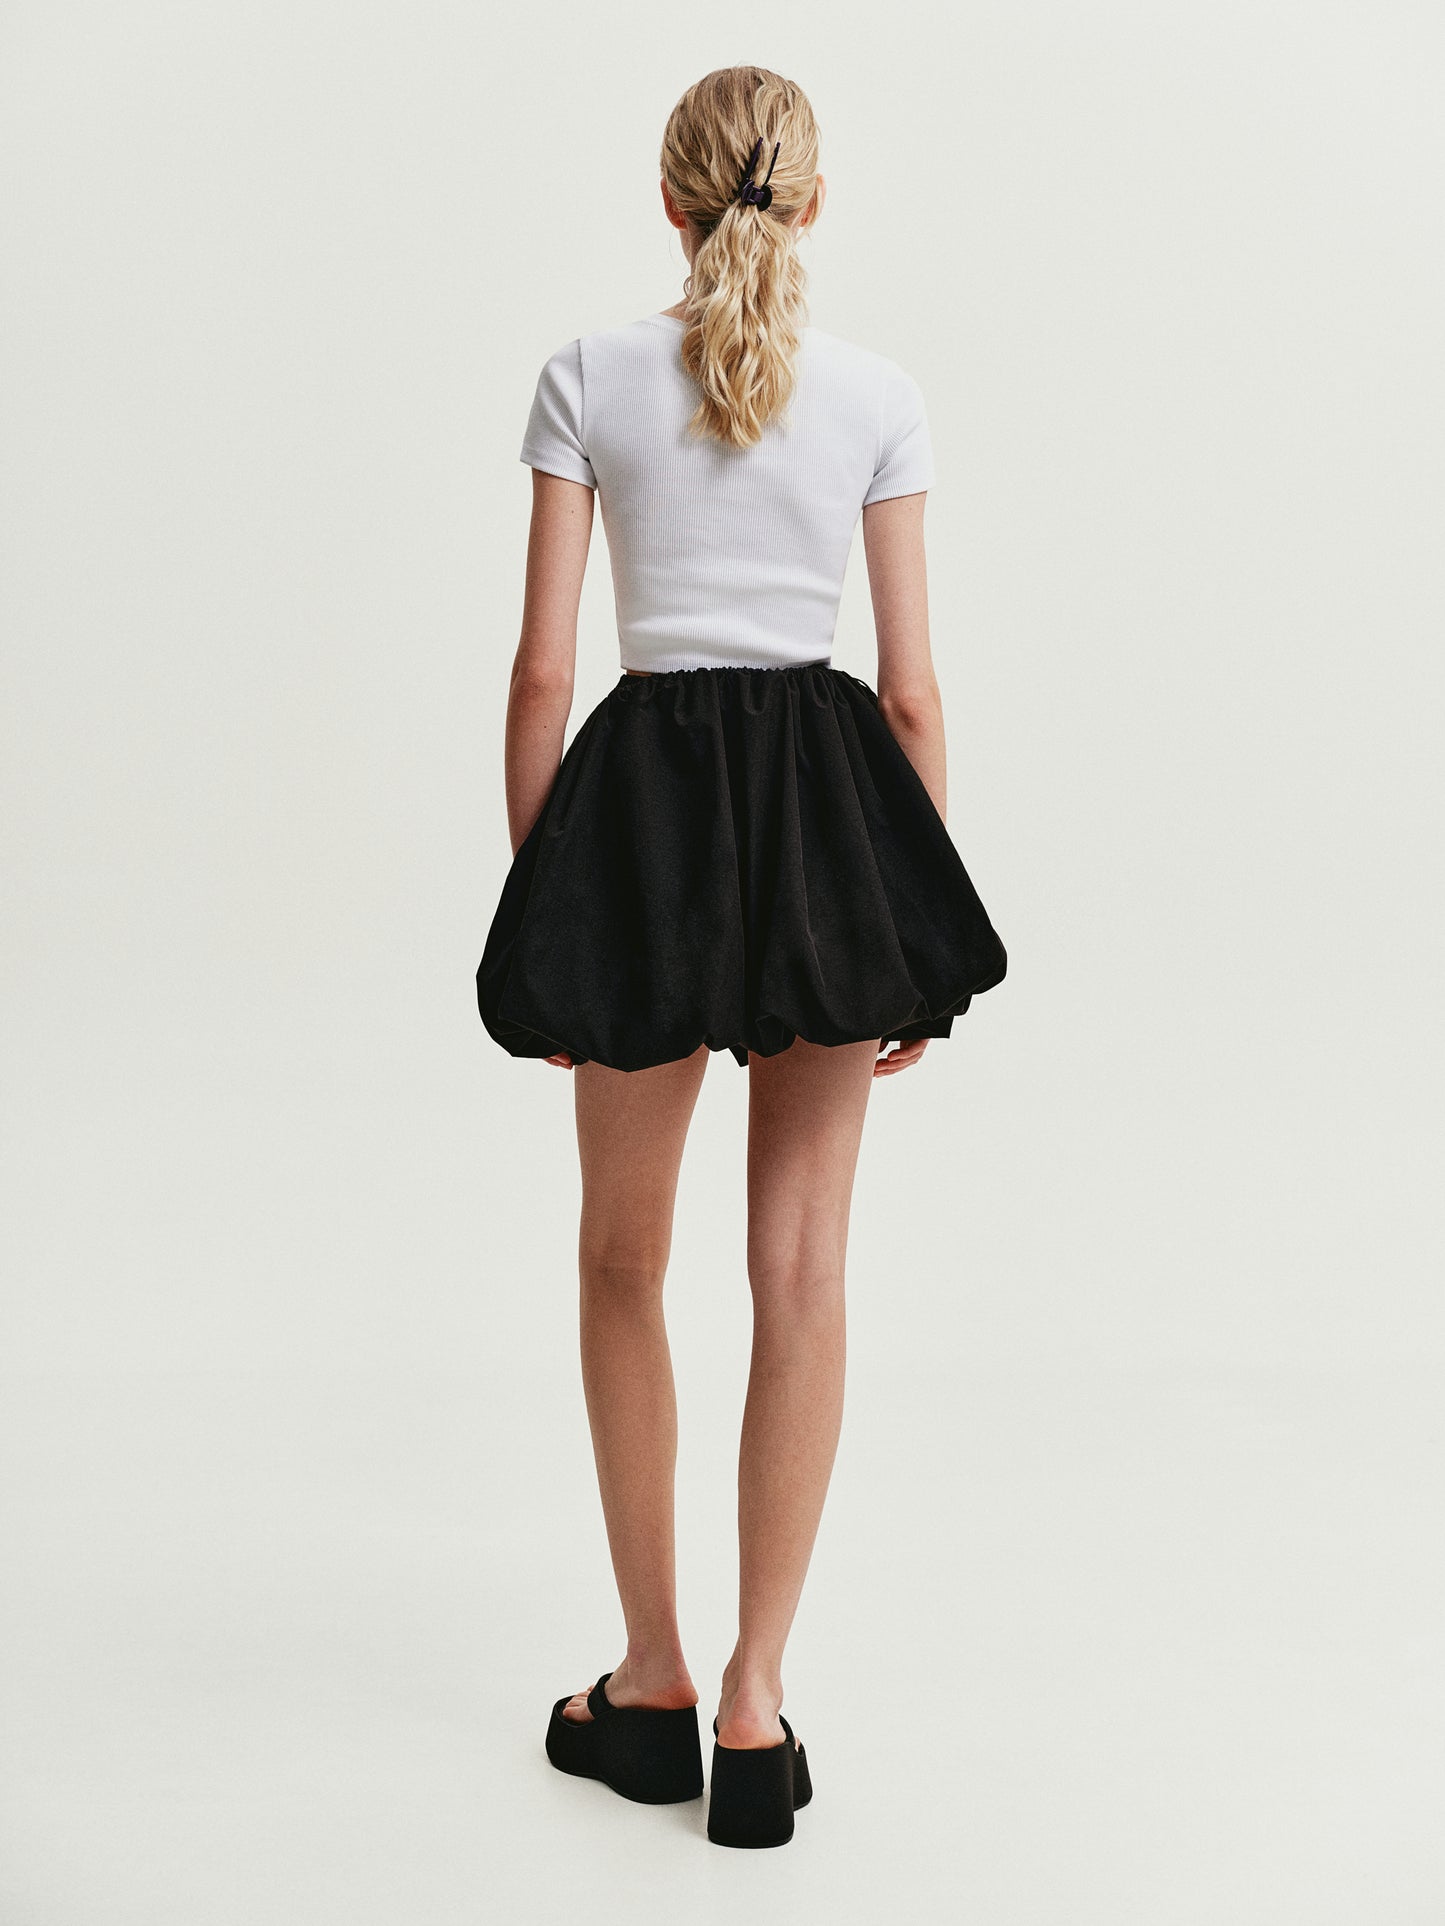 Black transformer skirt